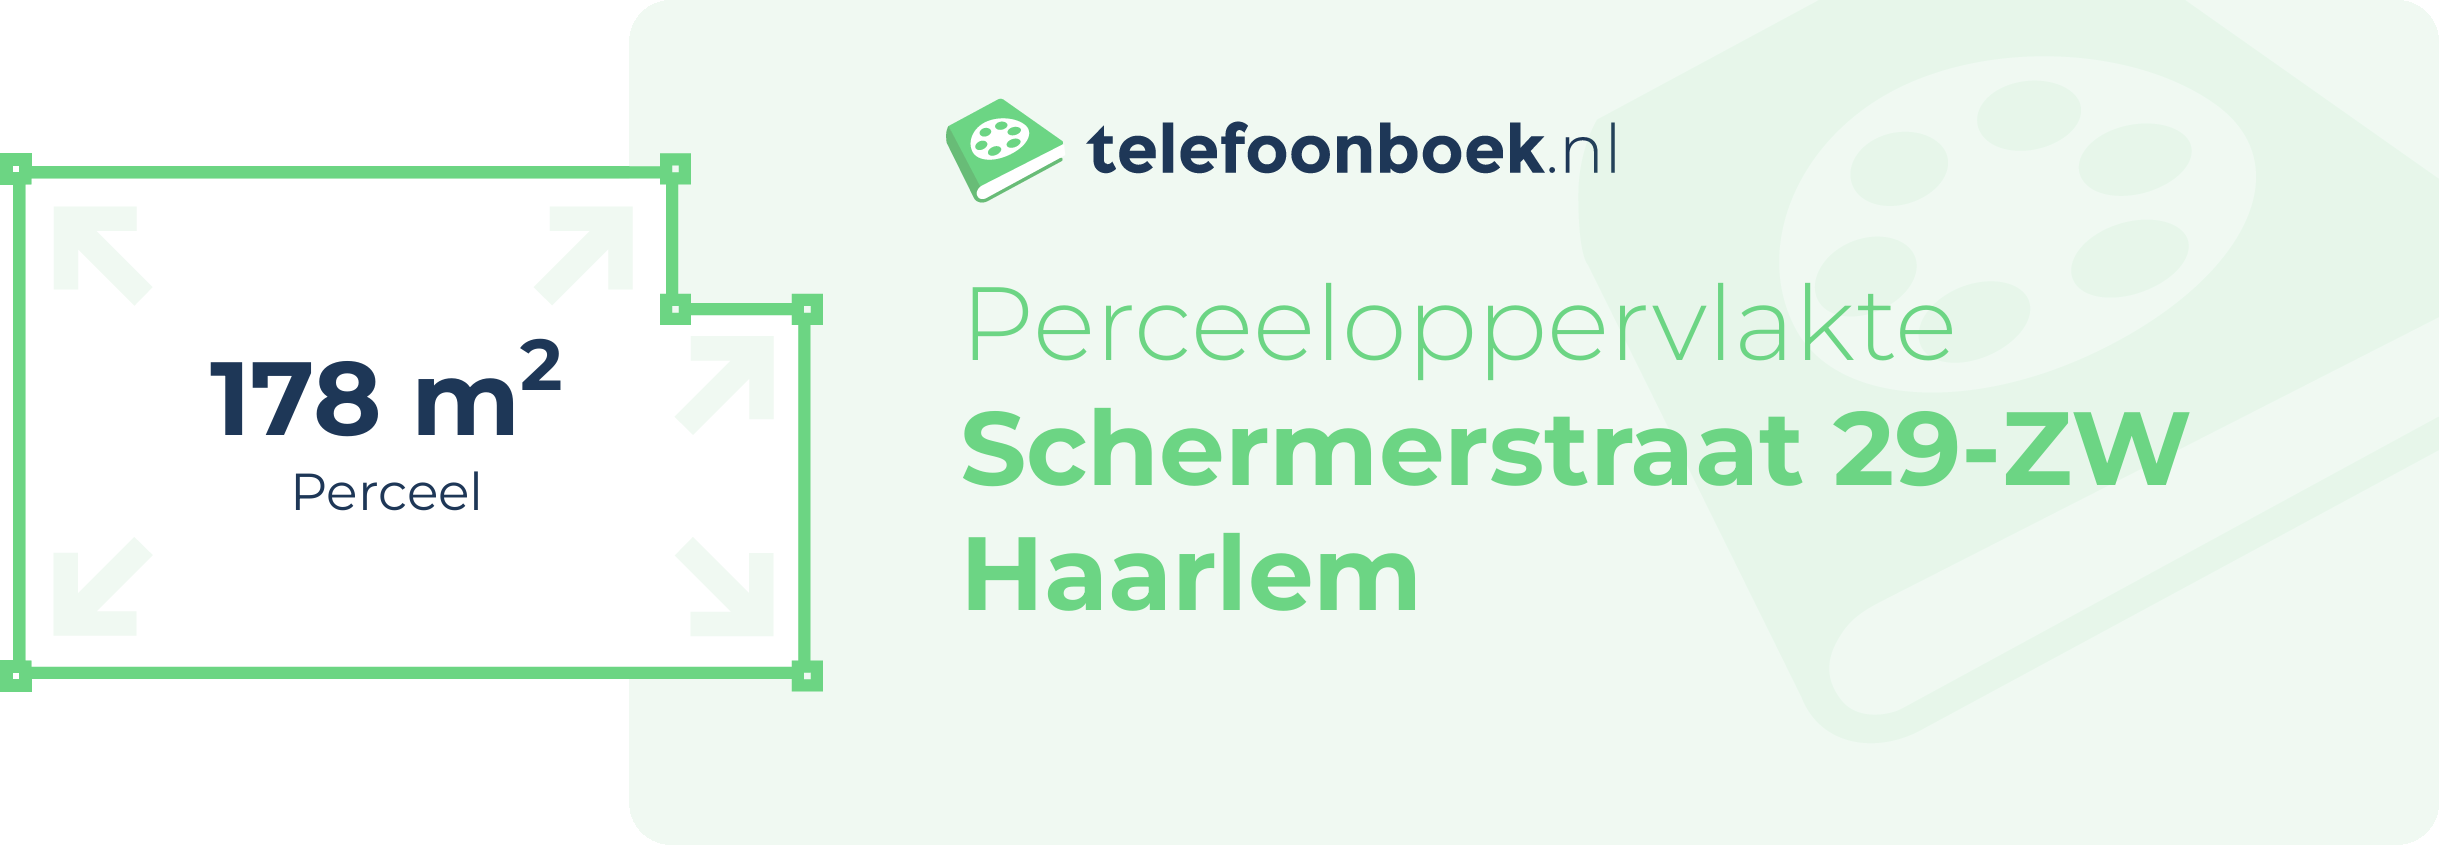 Perceeloppervlakte Schermerstraat 29-ZW Haarlem